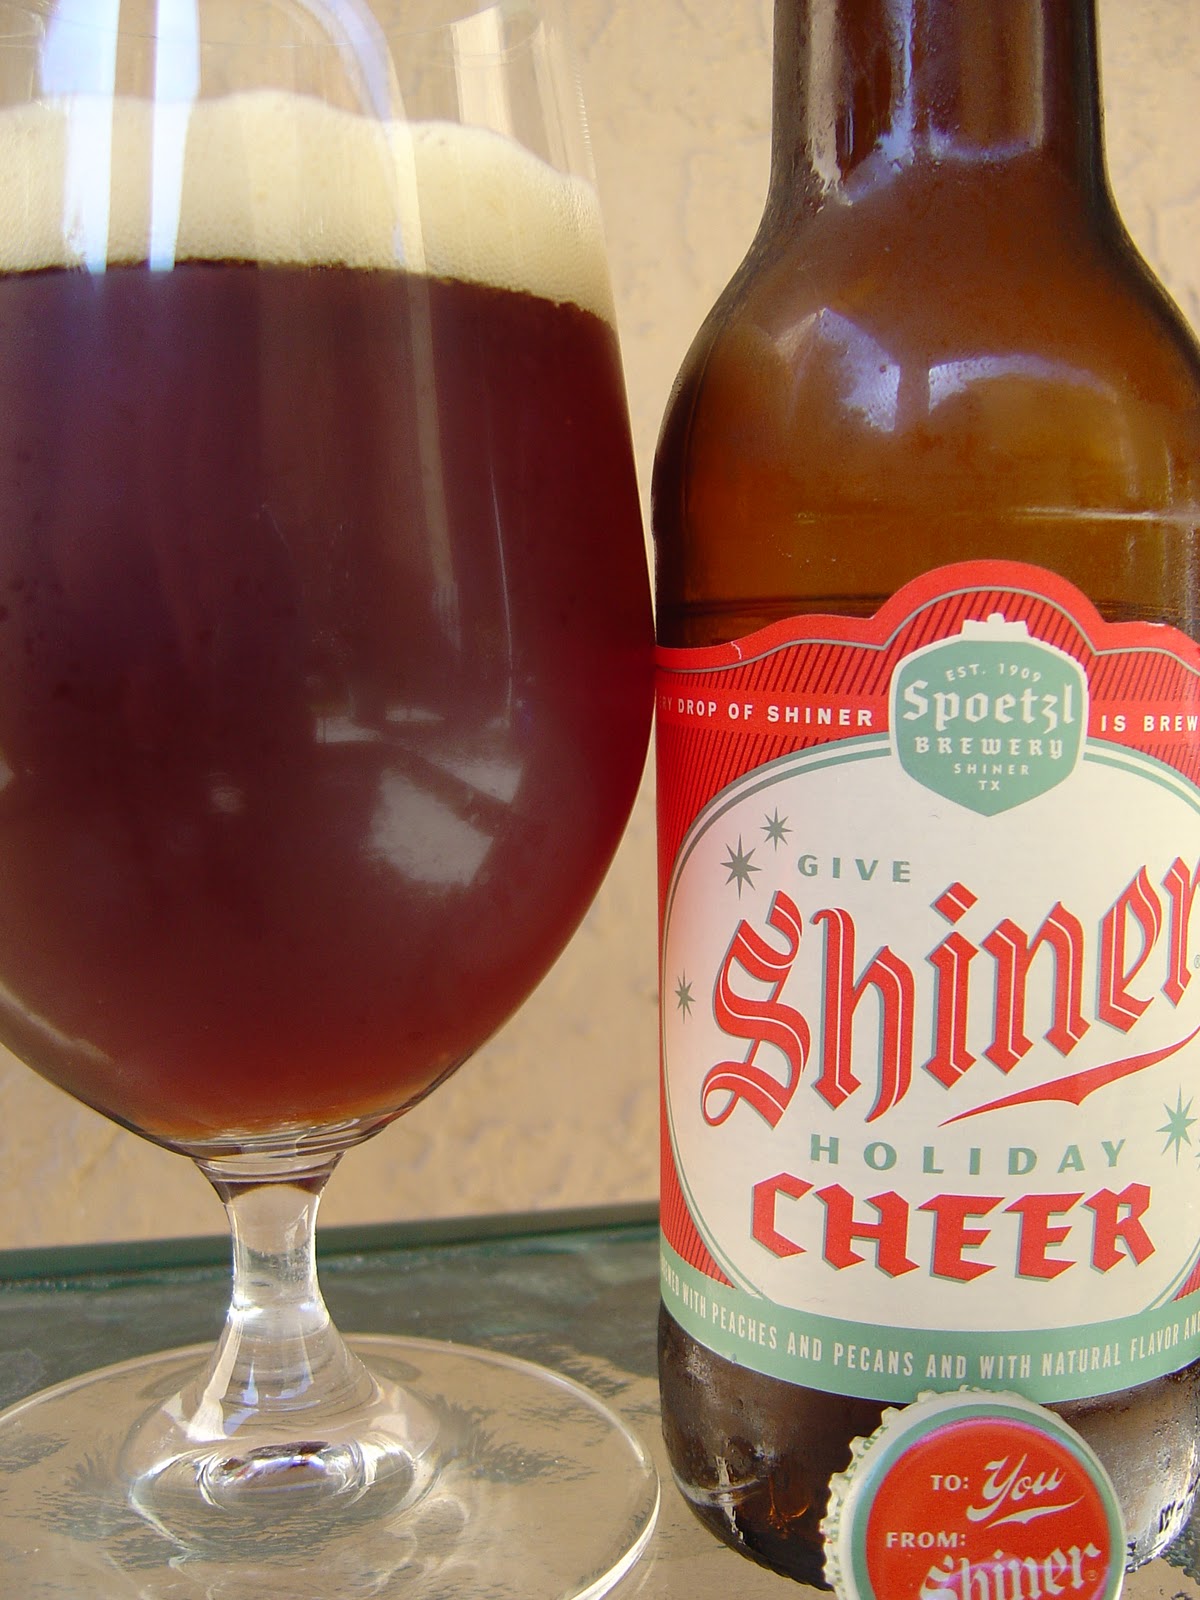 Daily Beer Review: Shiner Holiday Cheer